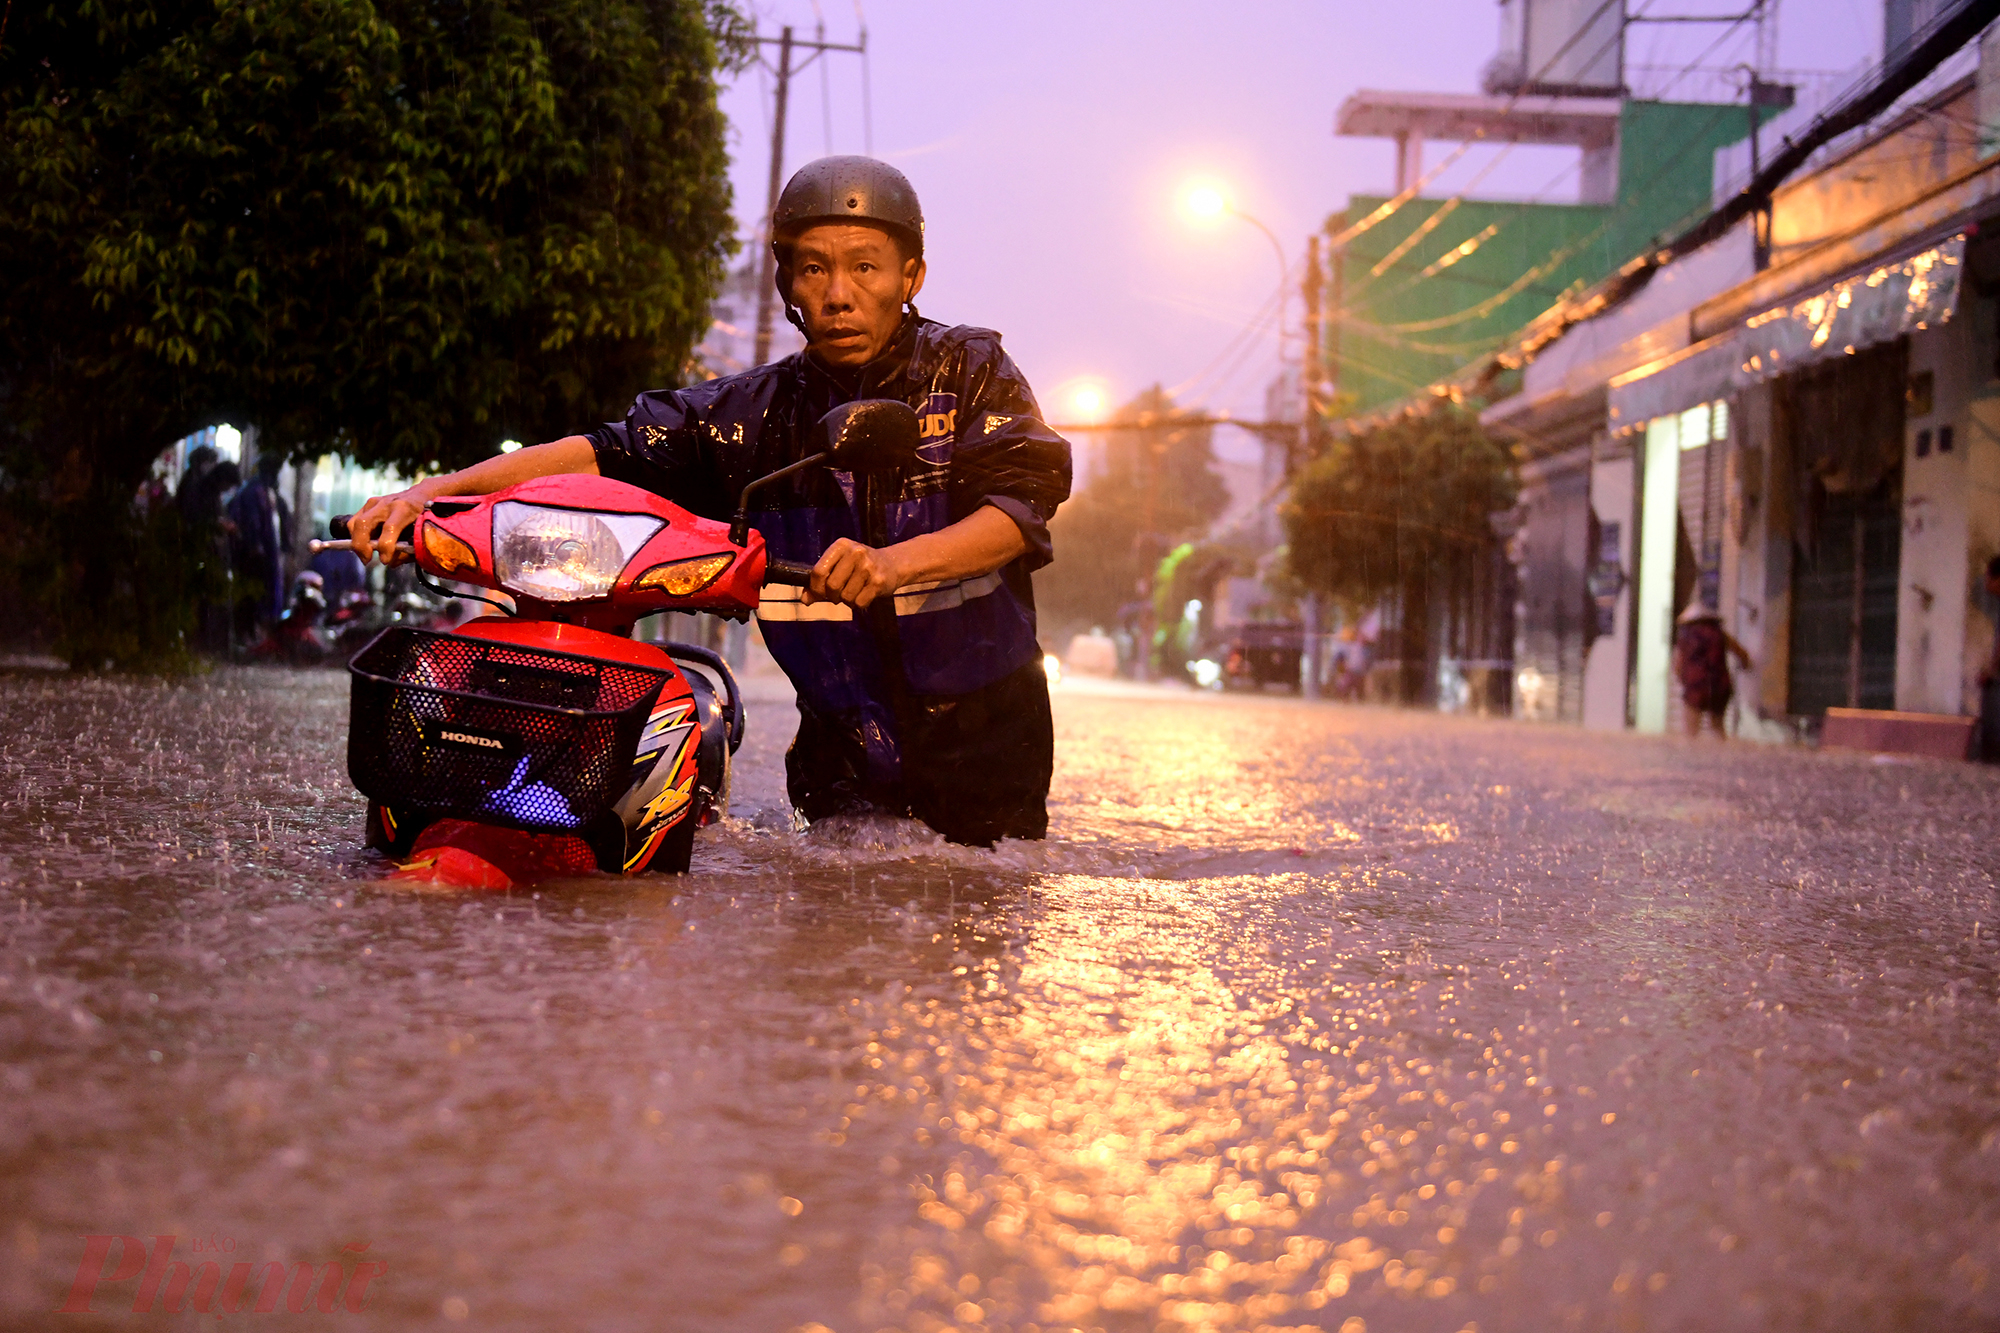 Nước ngập quá nửa xe máy, những đợt sóng liên tục khiến người đàn ông vất vả đẩy xe.